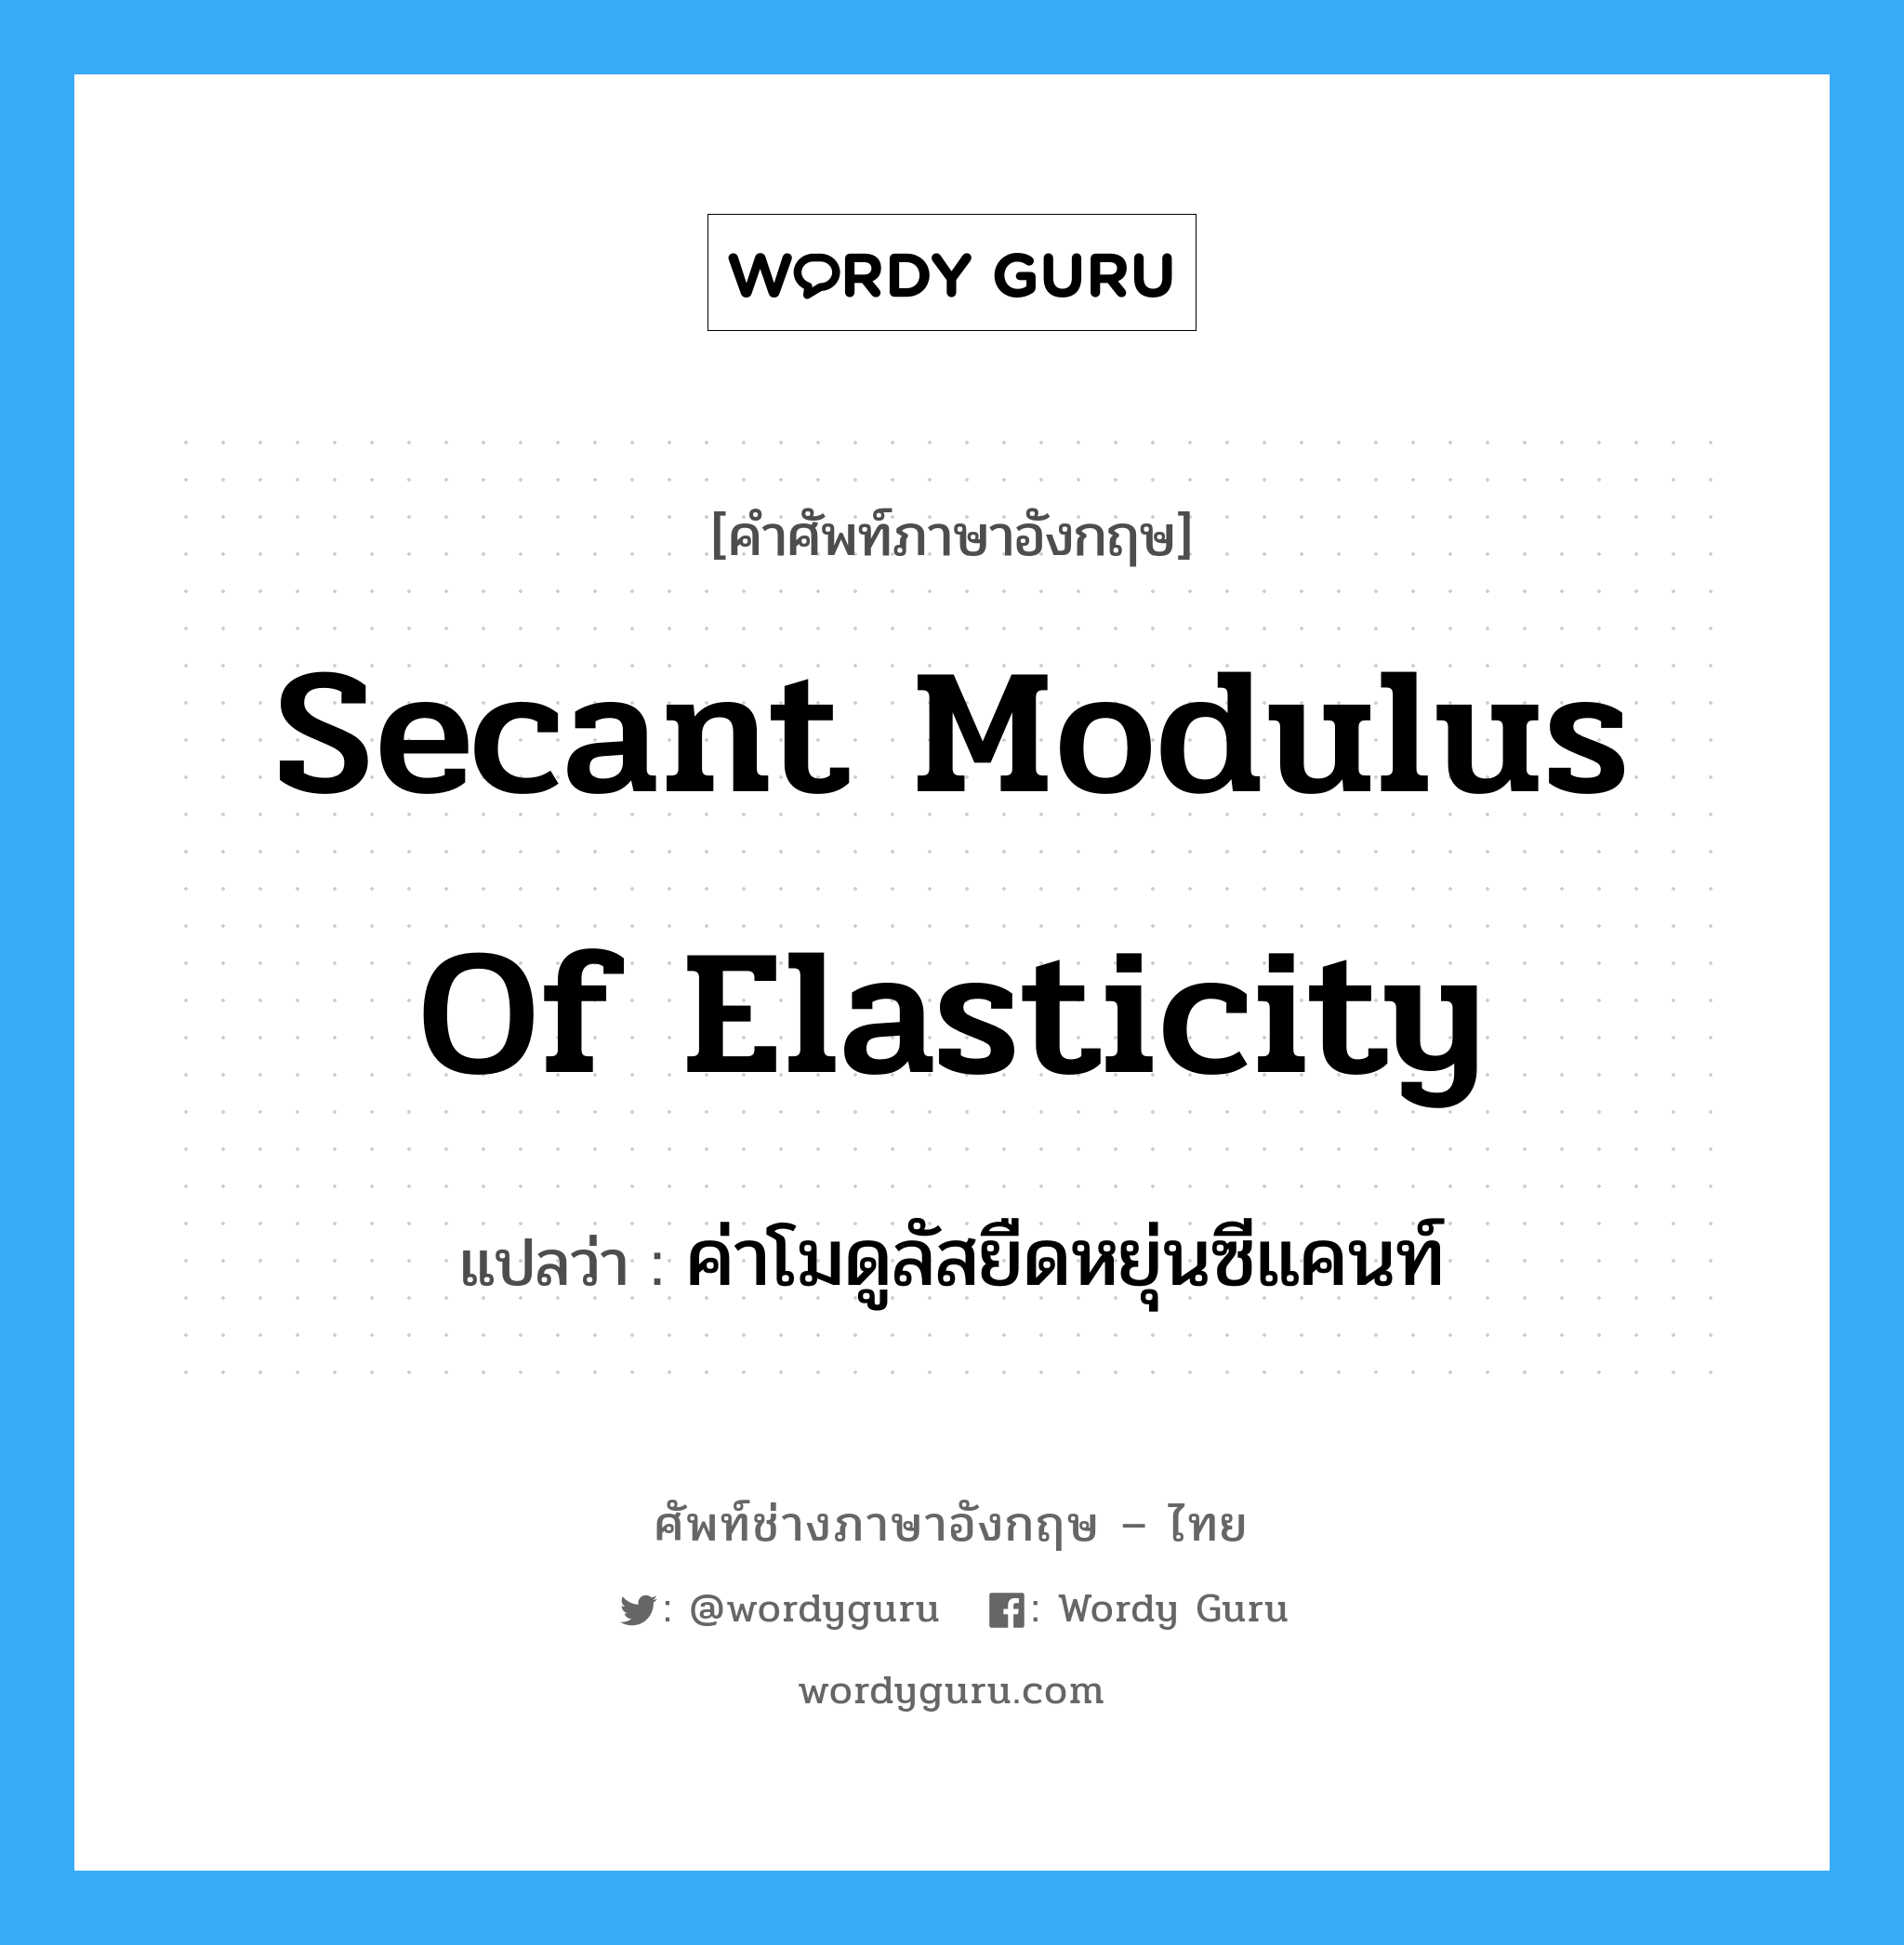 ค่าโมดูลัสยืดหยุ่นซีแคนท์ ภาษาอังกฤษ?, คำศัพท์ช่างภาษาอังกฤษ - ไทย ค่าโมดูลัสยืดหยุ่นซีแคนท์ คำศัพท์ภาษาอังกฤษ ค่าโมดูลัสยืดหยุ่นซีแคนท์ แปลว่า secant modulus of elasticity